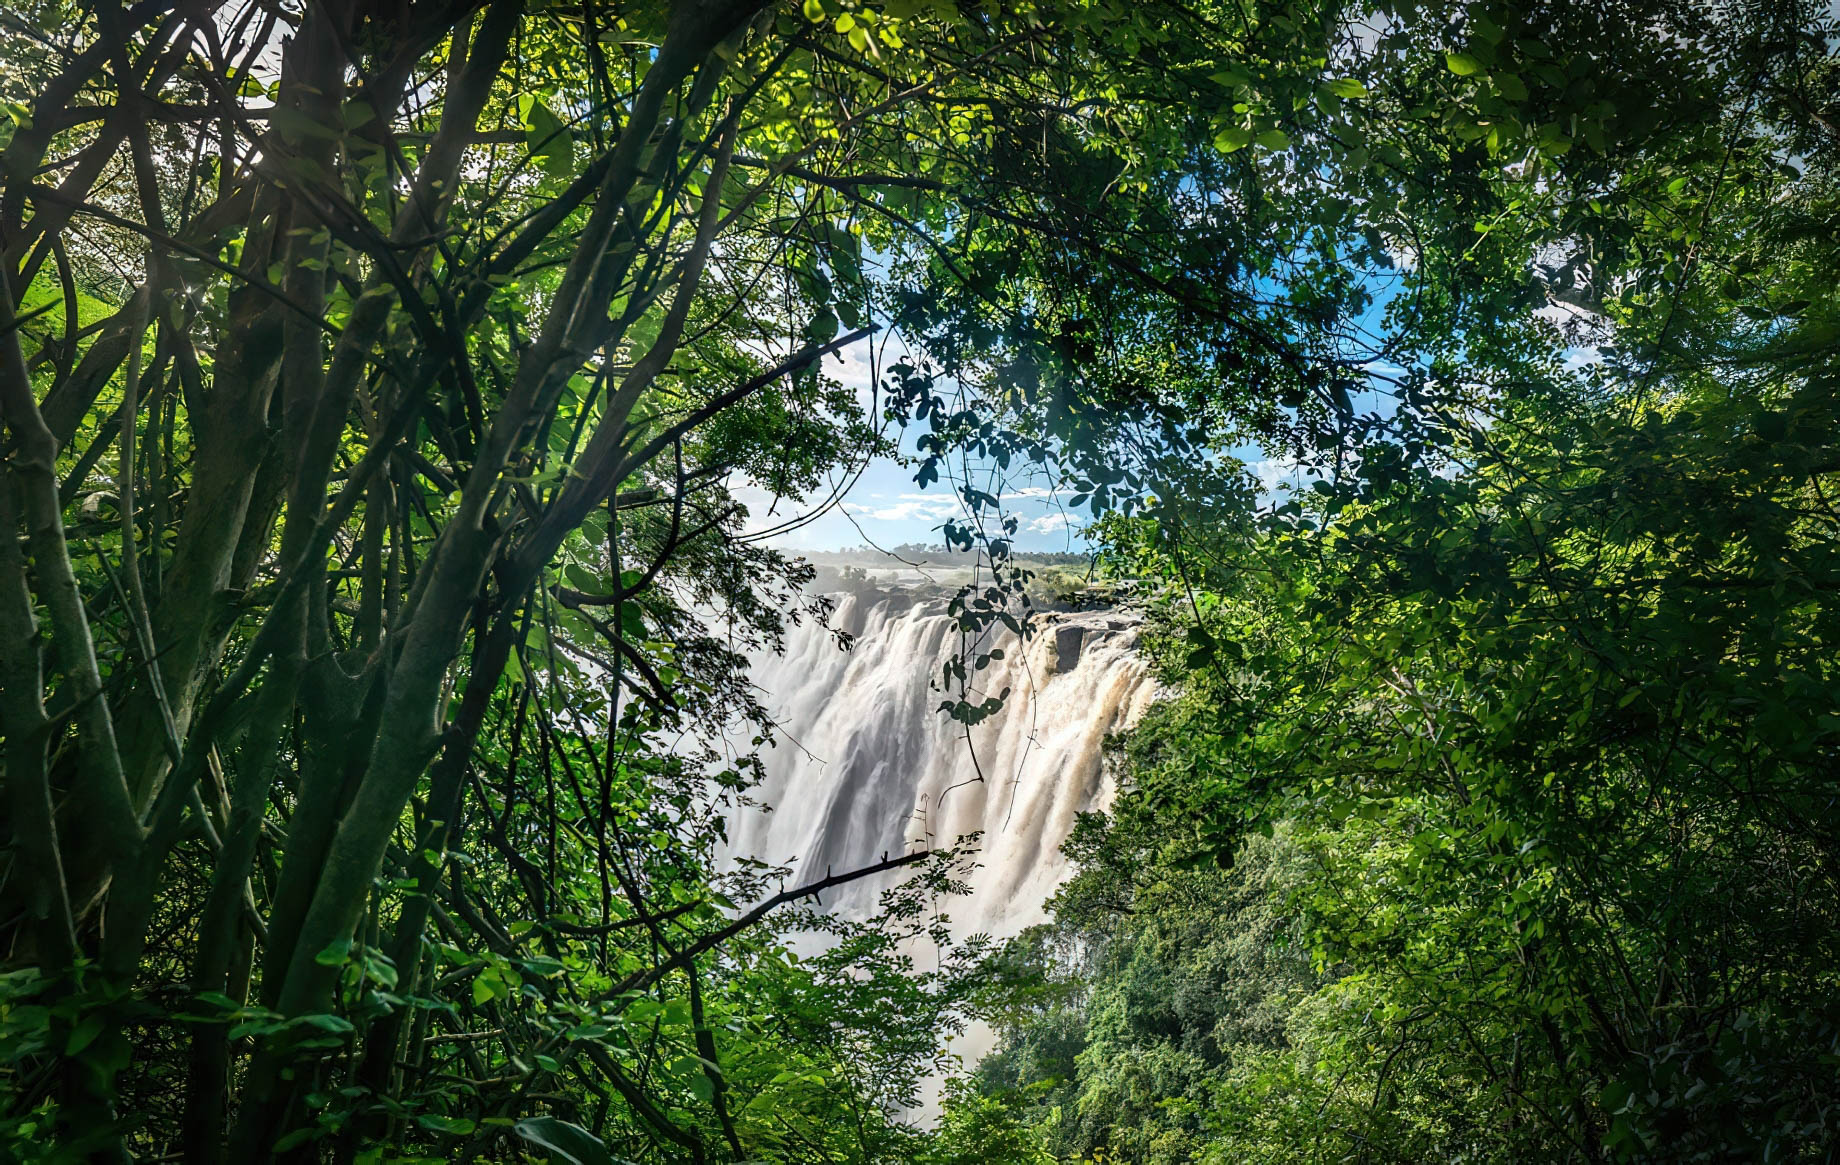 Avani Victoria Falls Resort – Livingstone, Zambia – Victoria Falls View